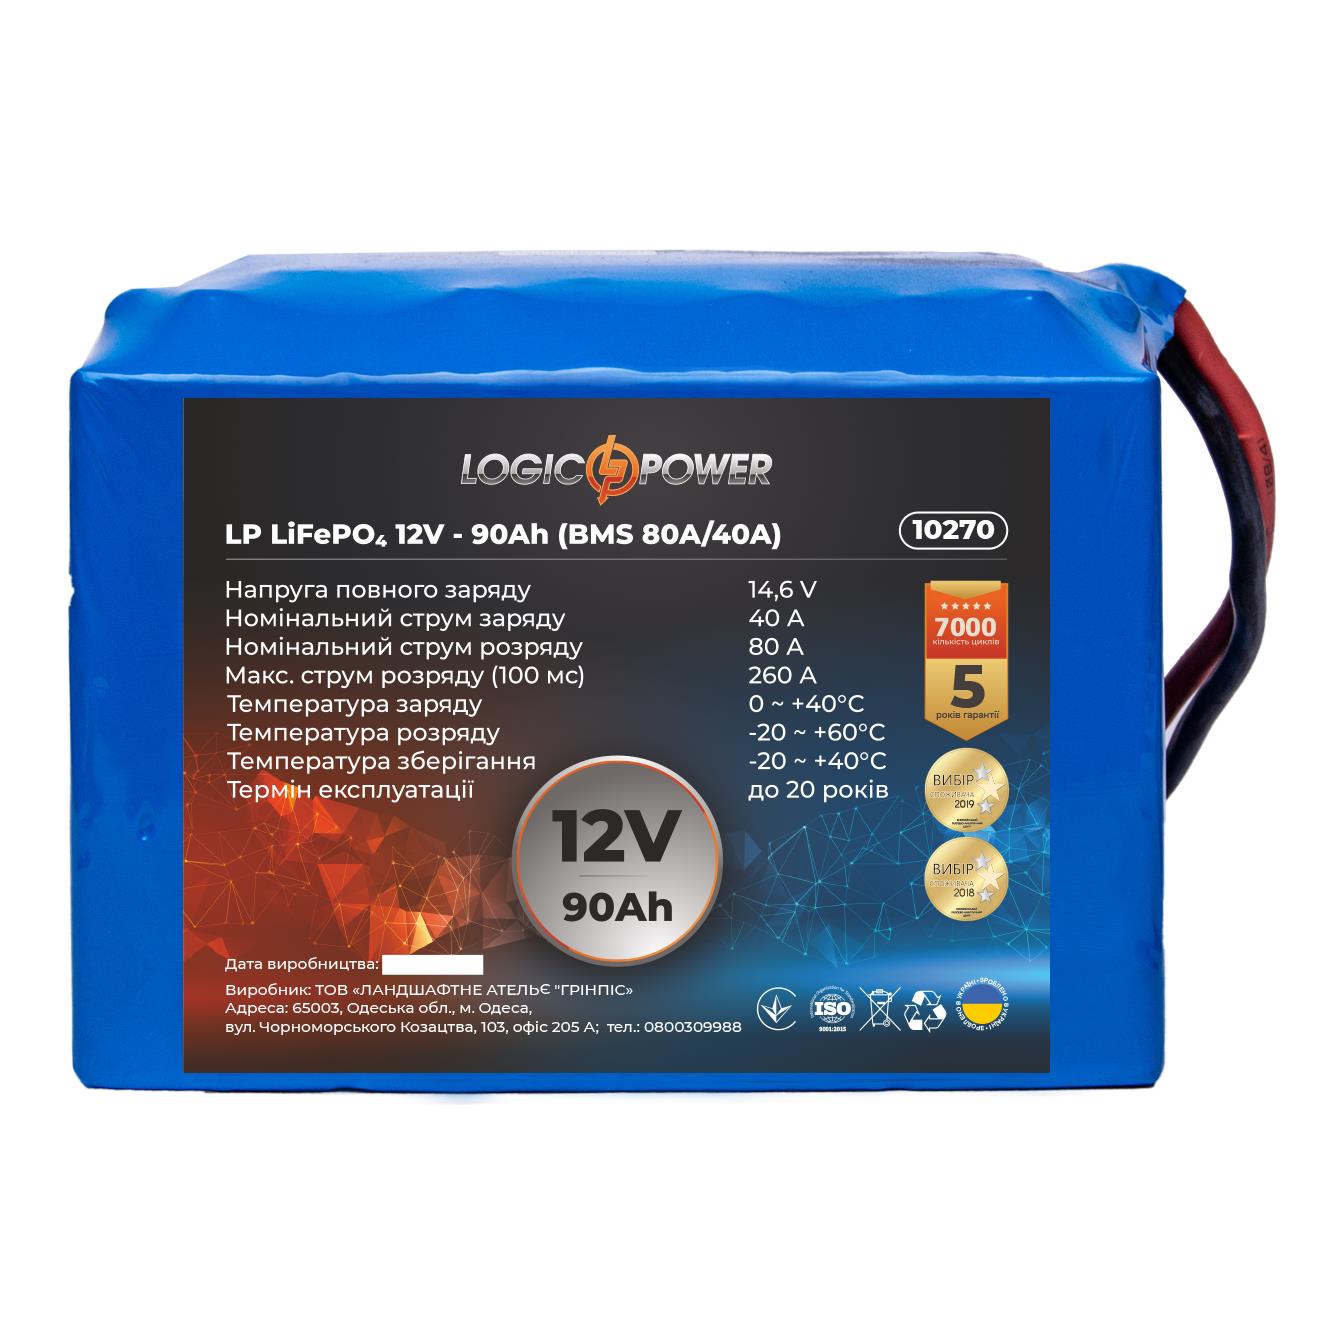 Аккумулятор литий-железо-фосфатный LogicPower LP LiFePO4 12V - 90 Ah (BMS 80A/40A) (10270) в интернет-магазине, главное фото